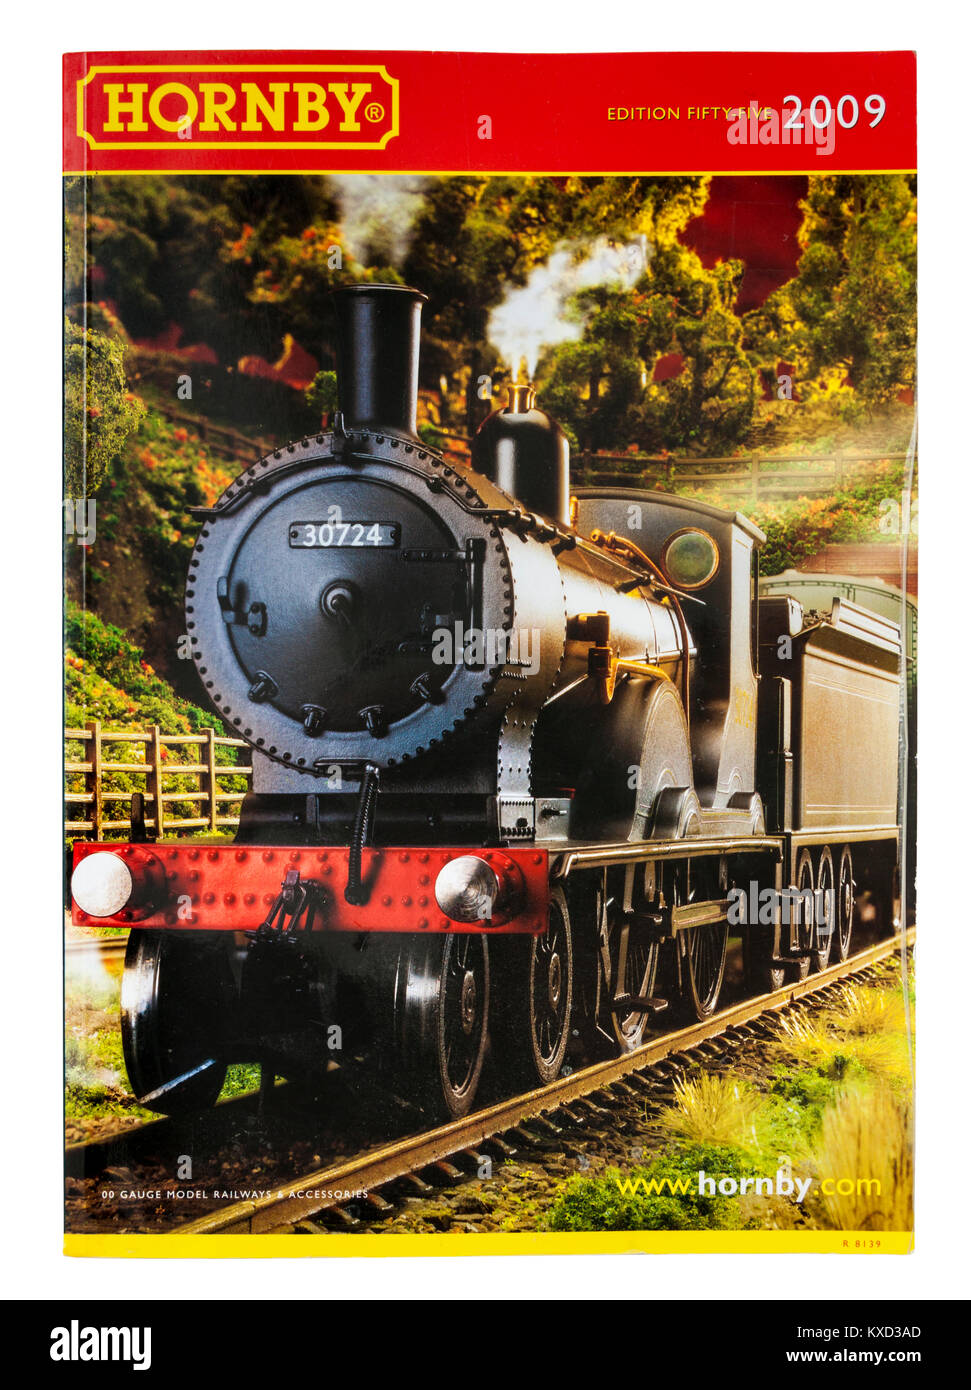 Modèle Hornby railways catalogue à partir de 2009 (édition 55) avec London and South Western Railway T9 4-4-0 locomotive de 1899 par D. Drummond. Banque D'Images